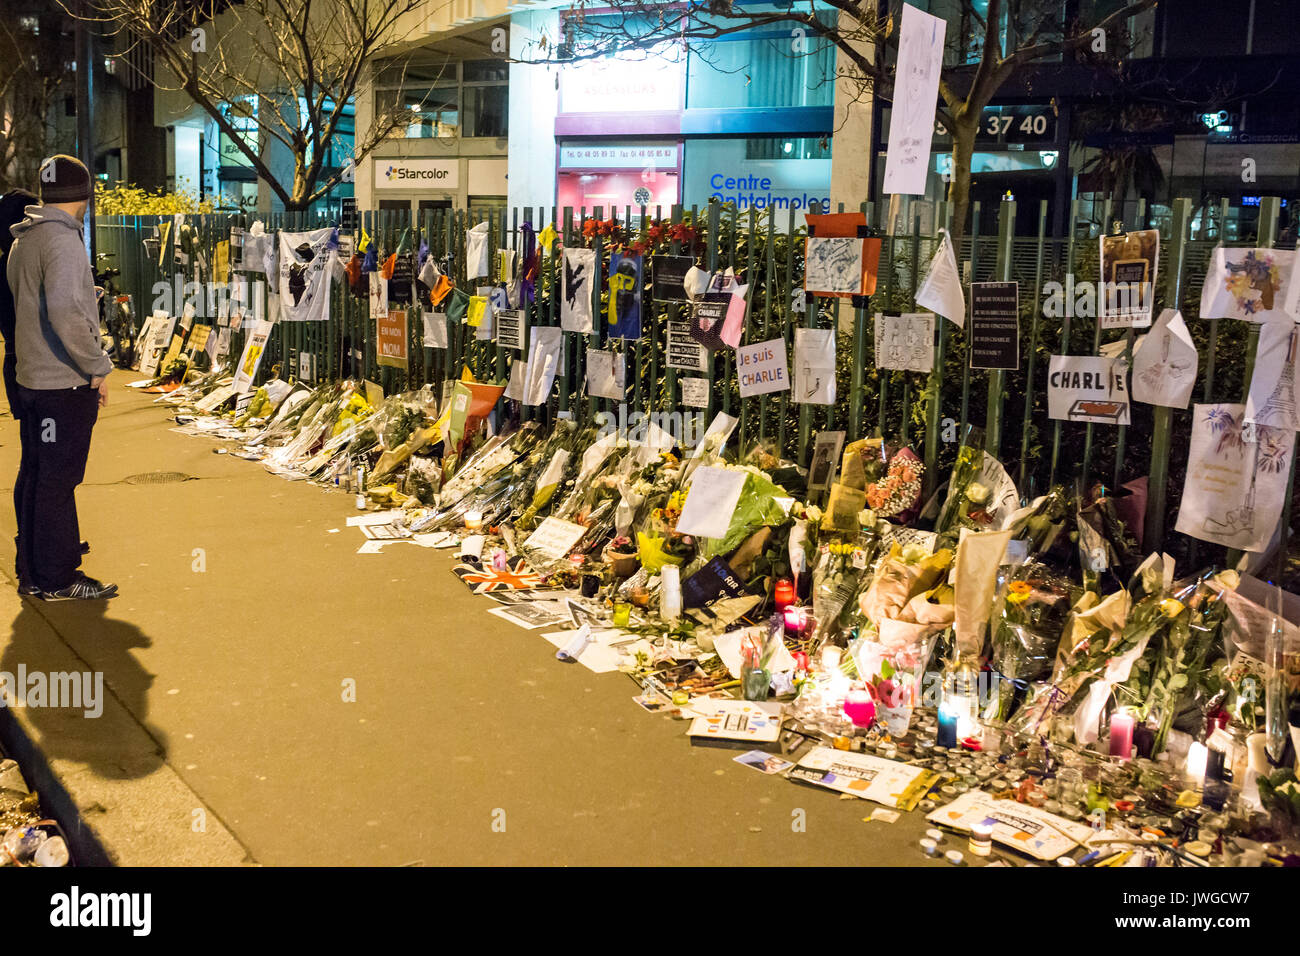 2 Personen am Zaun voller commemortaions, Zeichnungen, Notizen, Blumen suchen. Hommage an die Opfer von Charlie Hebdo Tötung in Paris das 7. von Jan Stockfoto